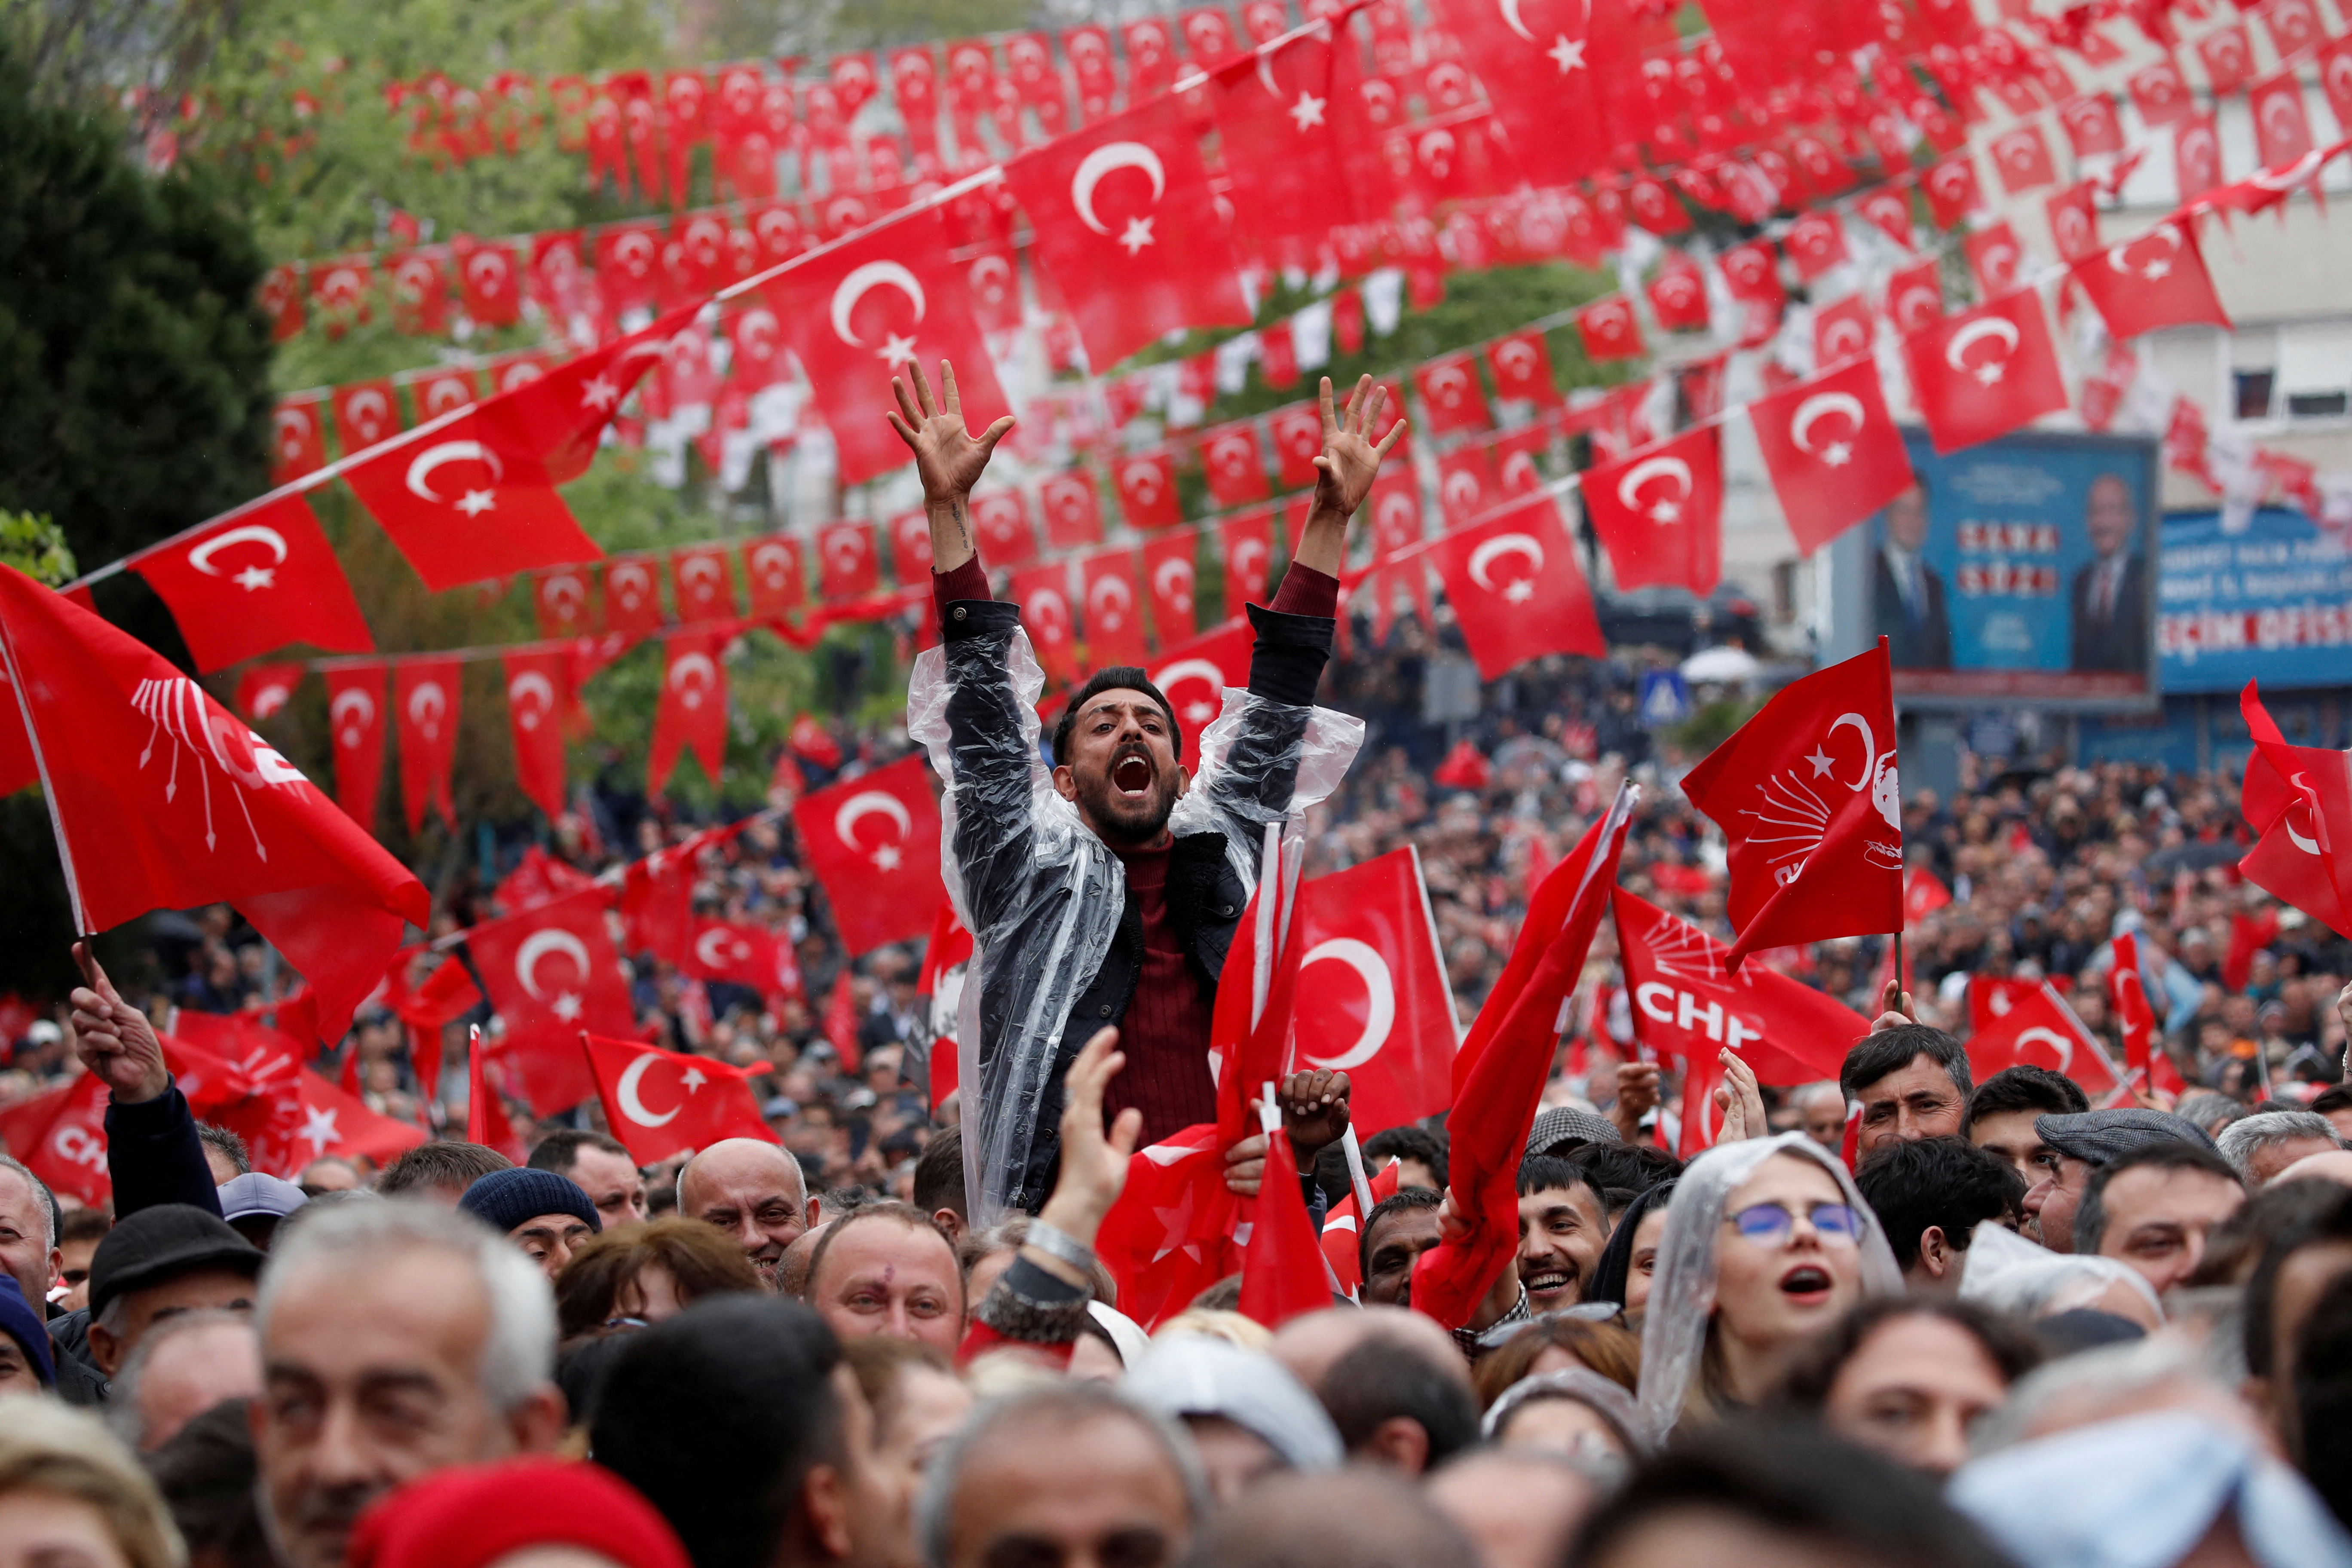 Acto de campaña del opositor Kemal Kilicdaroglu, en la ciudad de Tekirdag, Turquía. (REUTERS/Murad Sezer)